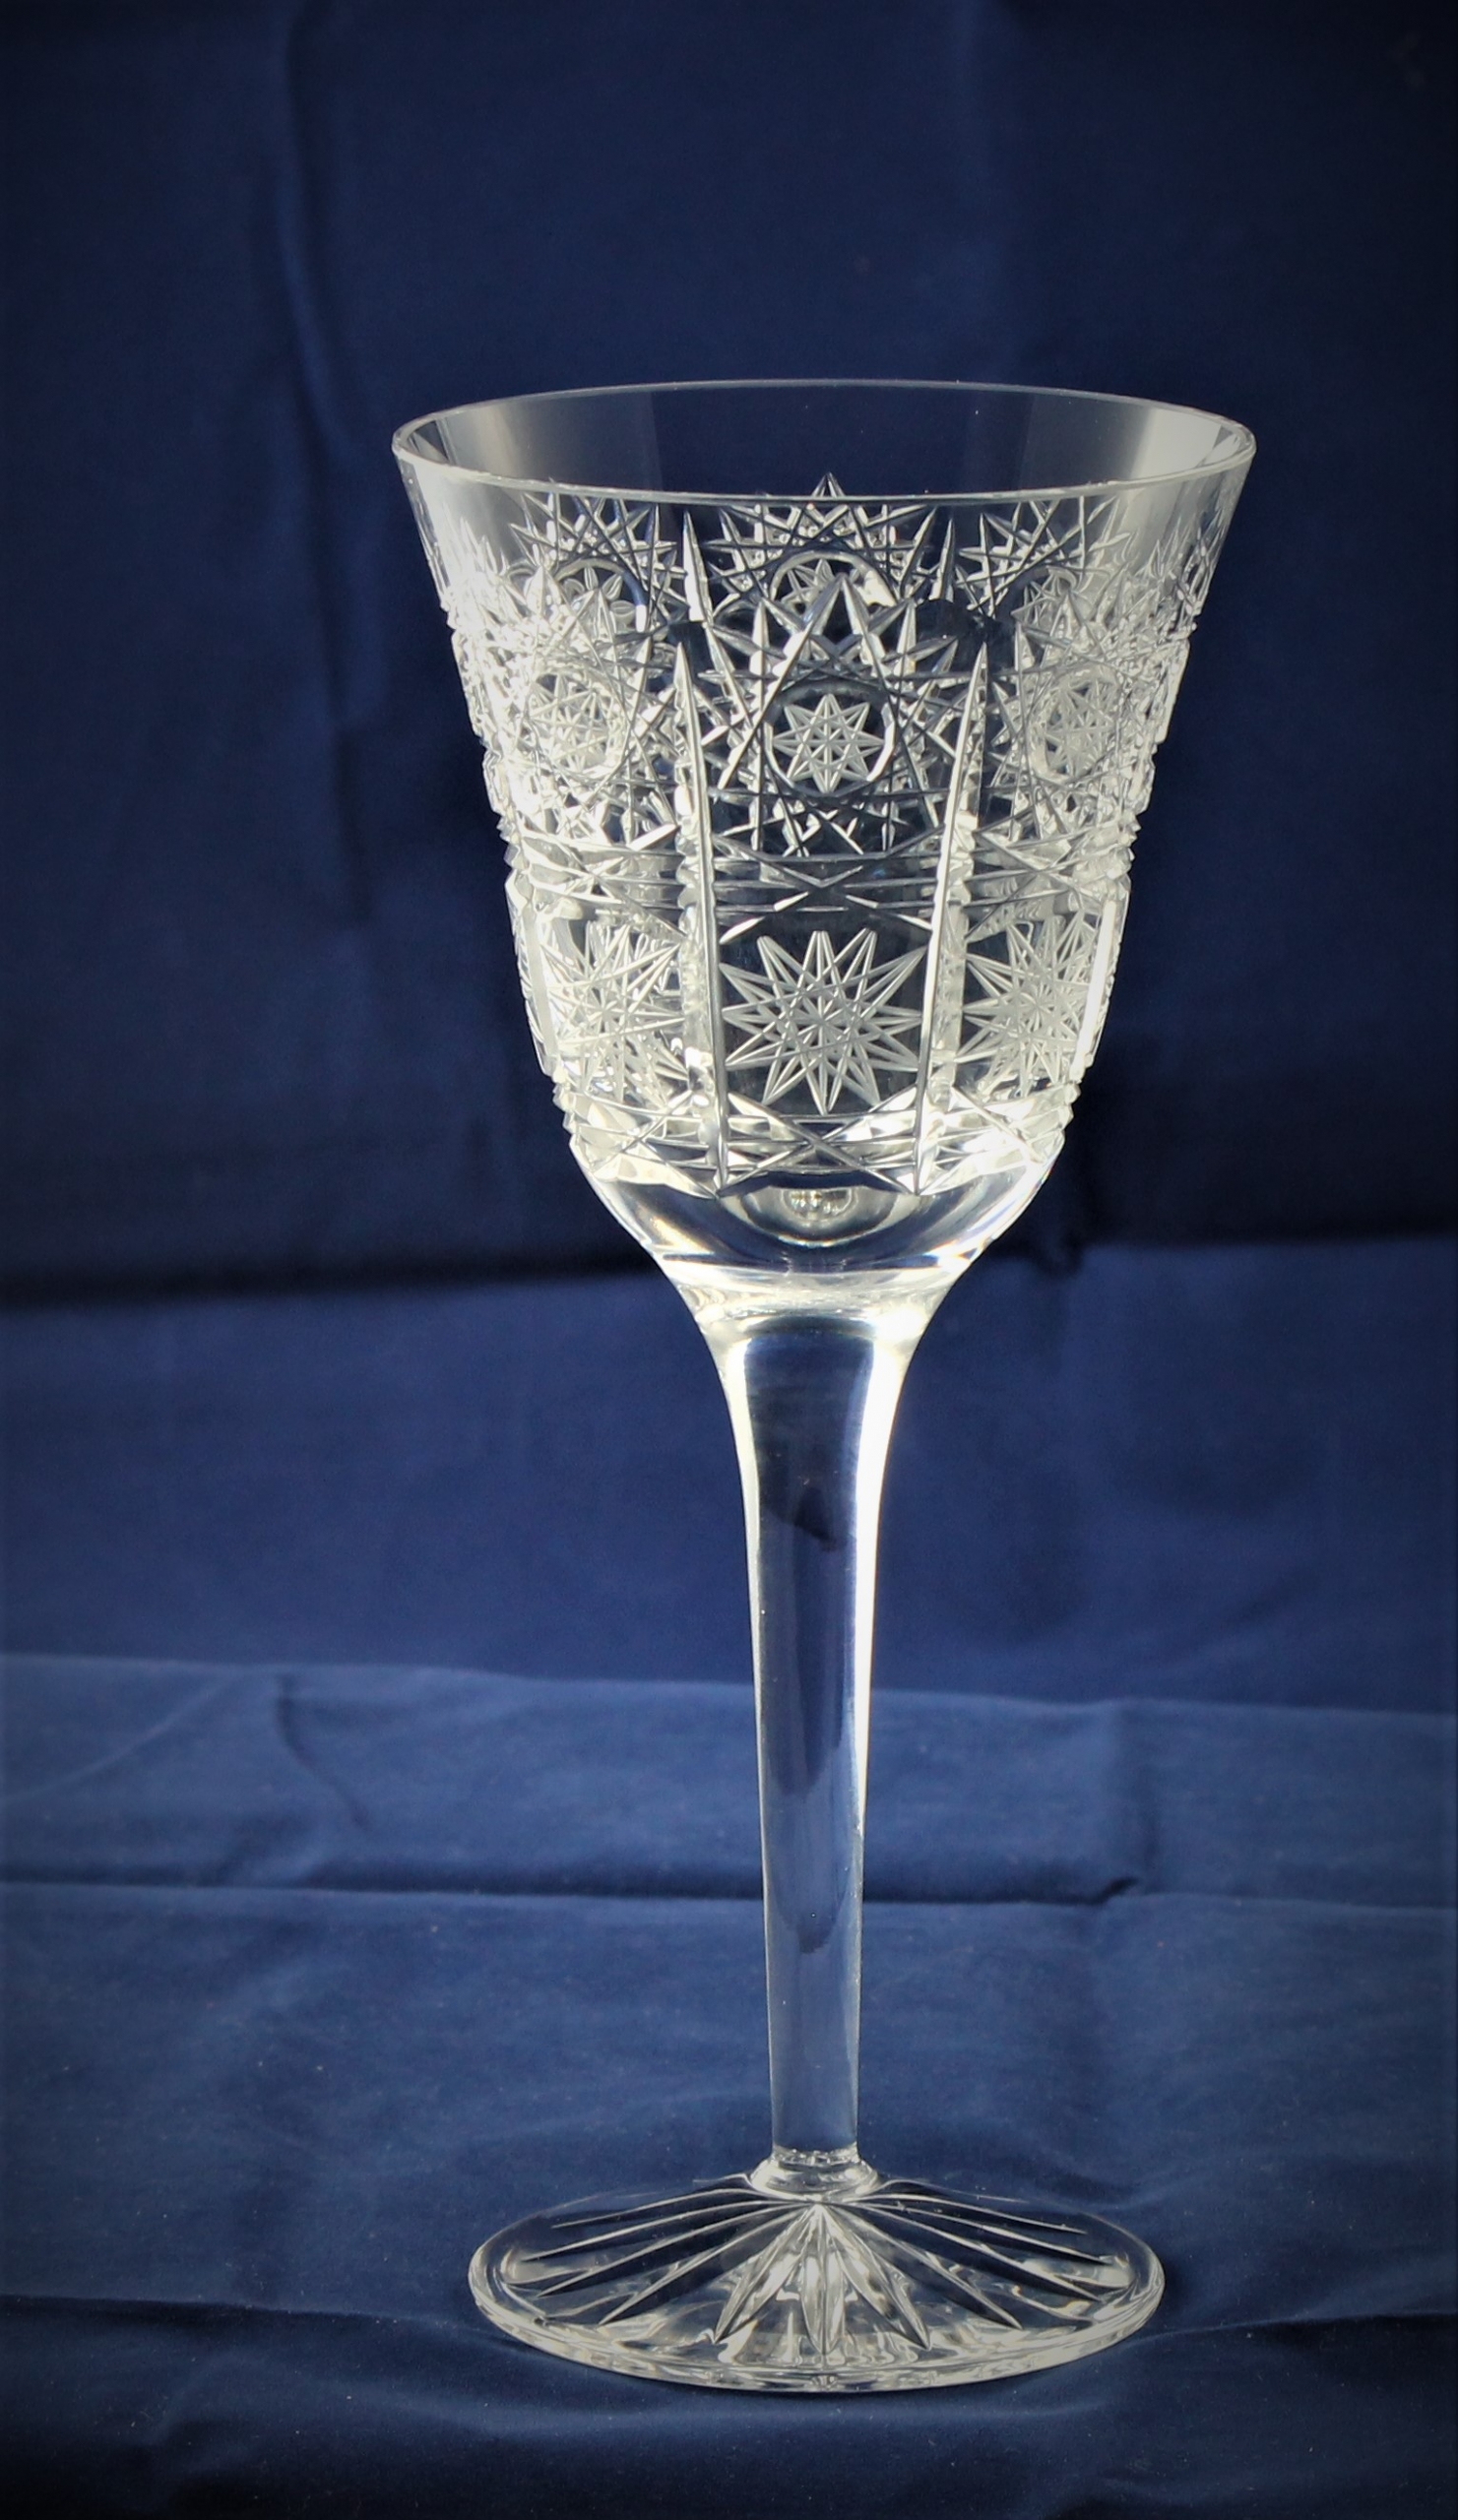  Confezione 6 bicchieri da vino bianco in cristallo collezione Venezia 25 cl Cristallo di Boemia taillé  